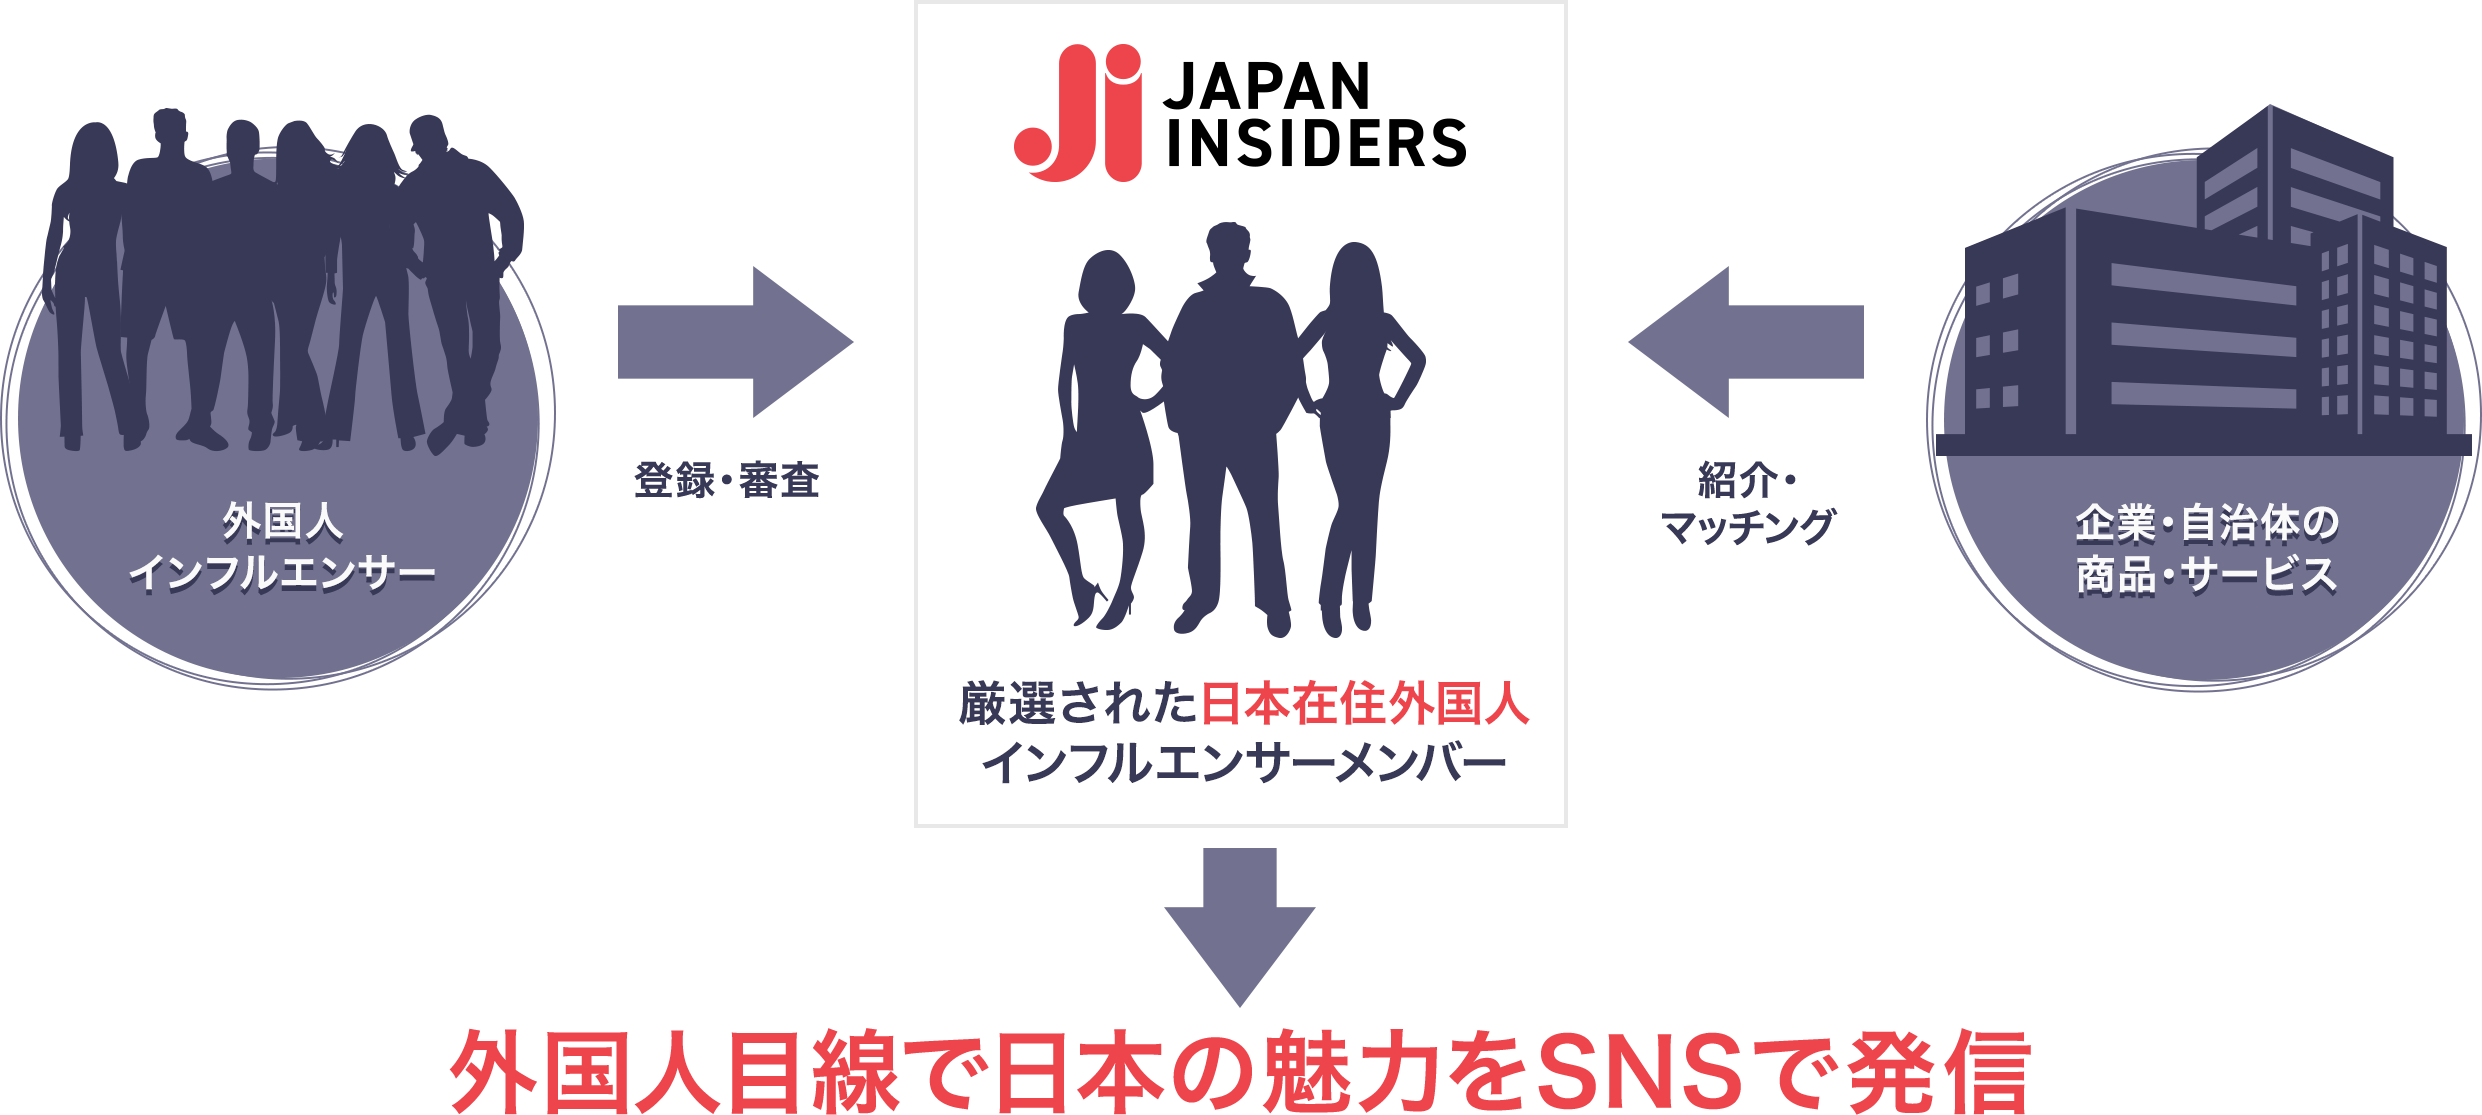 厳選された日本在住外国人インフルエンサーメンバが、外国人目線で日本の魅力をSNSで発信